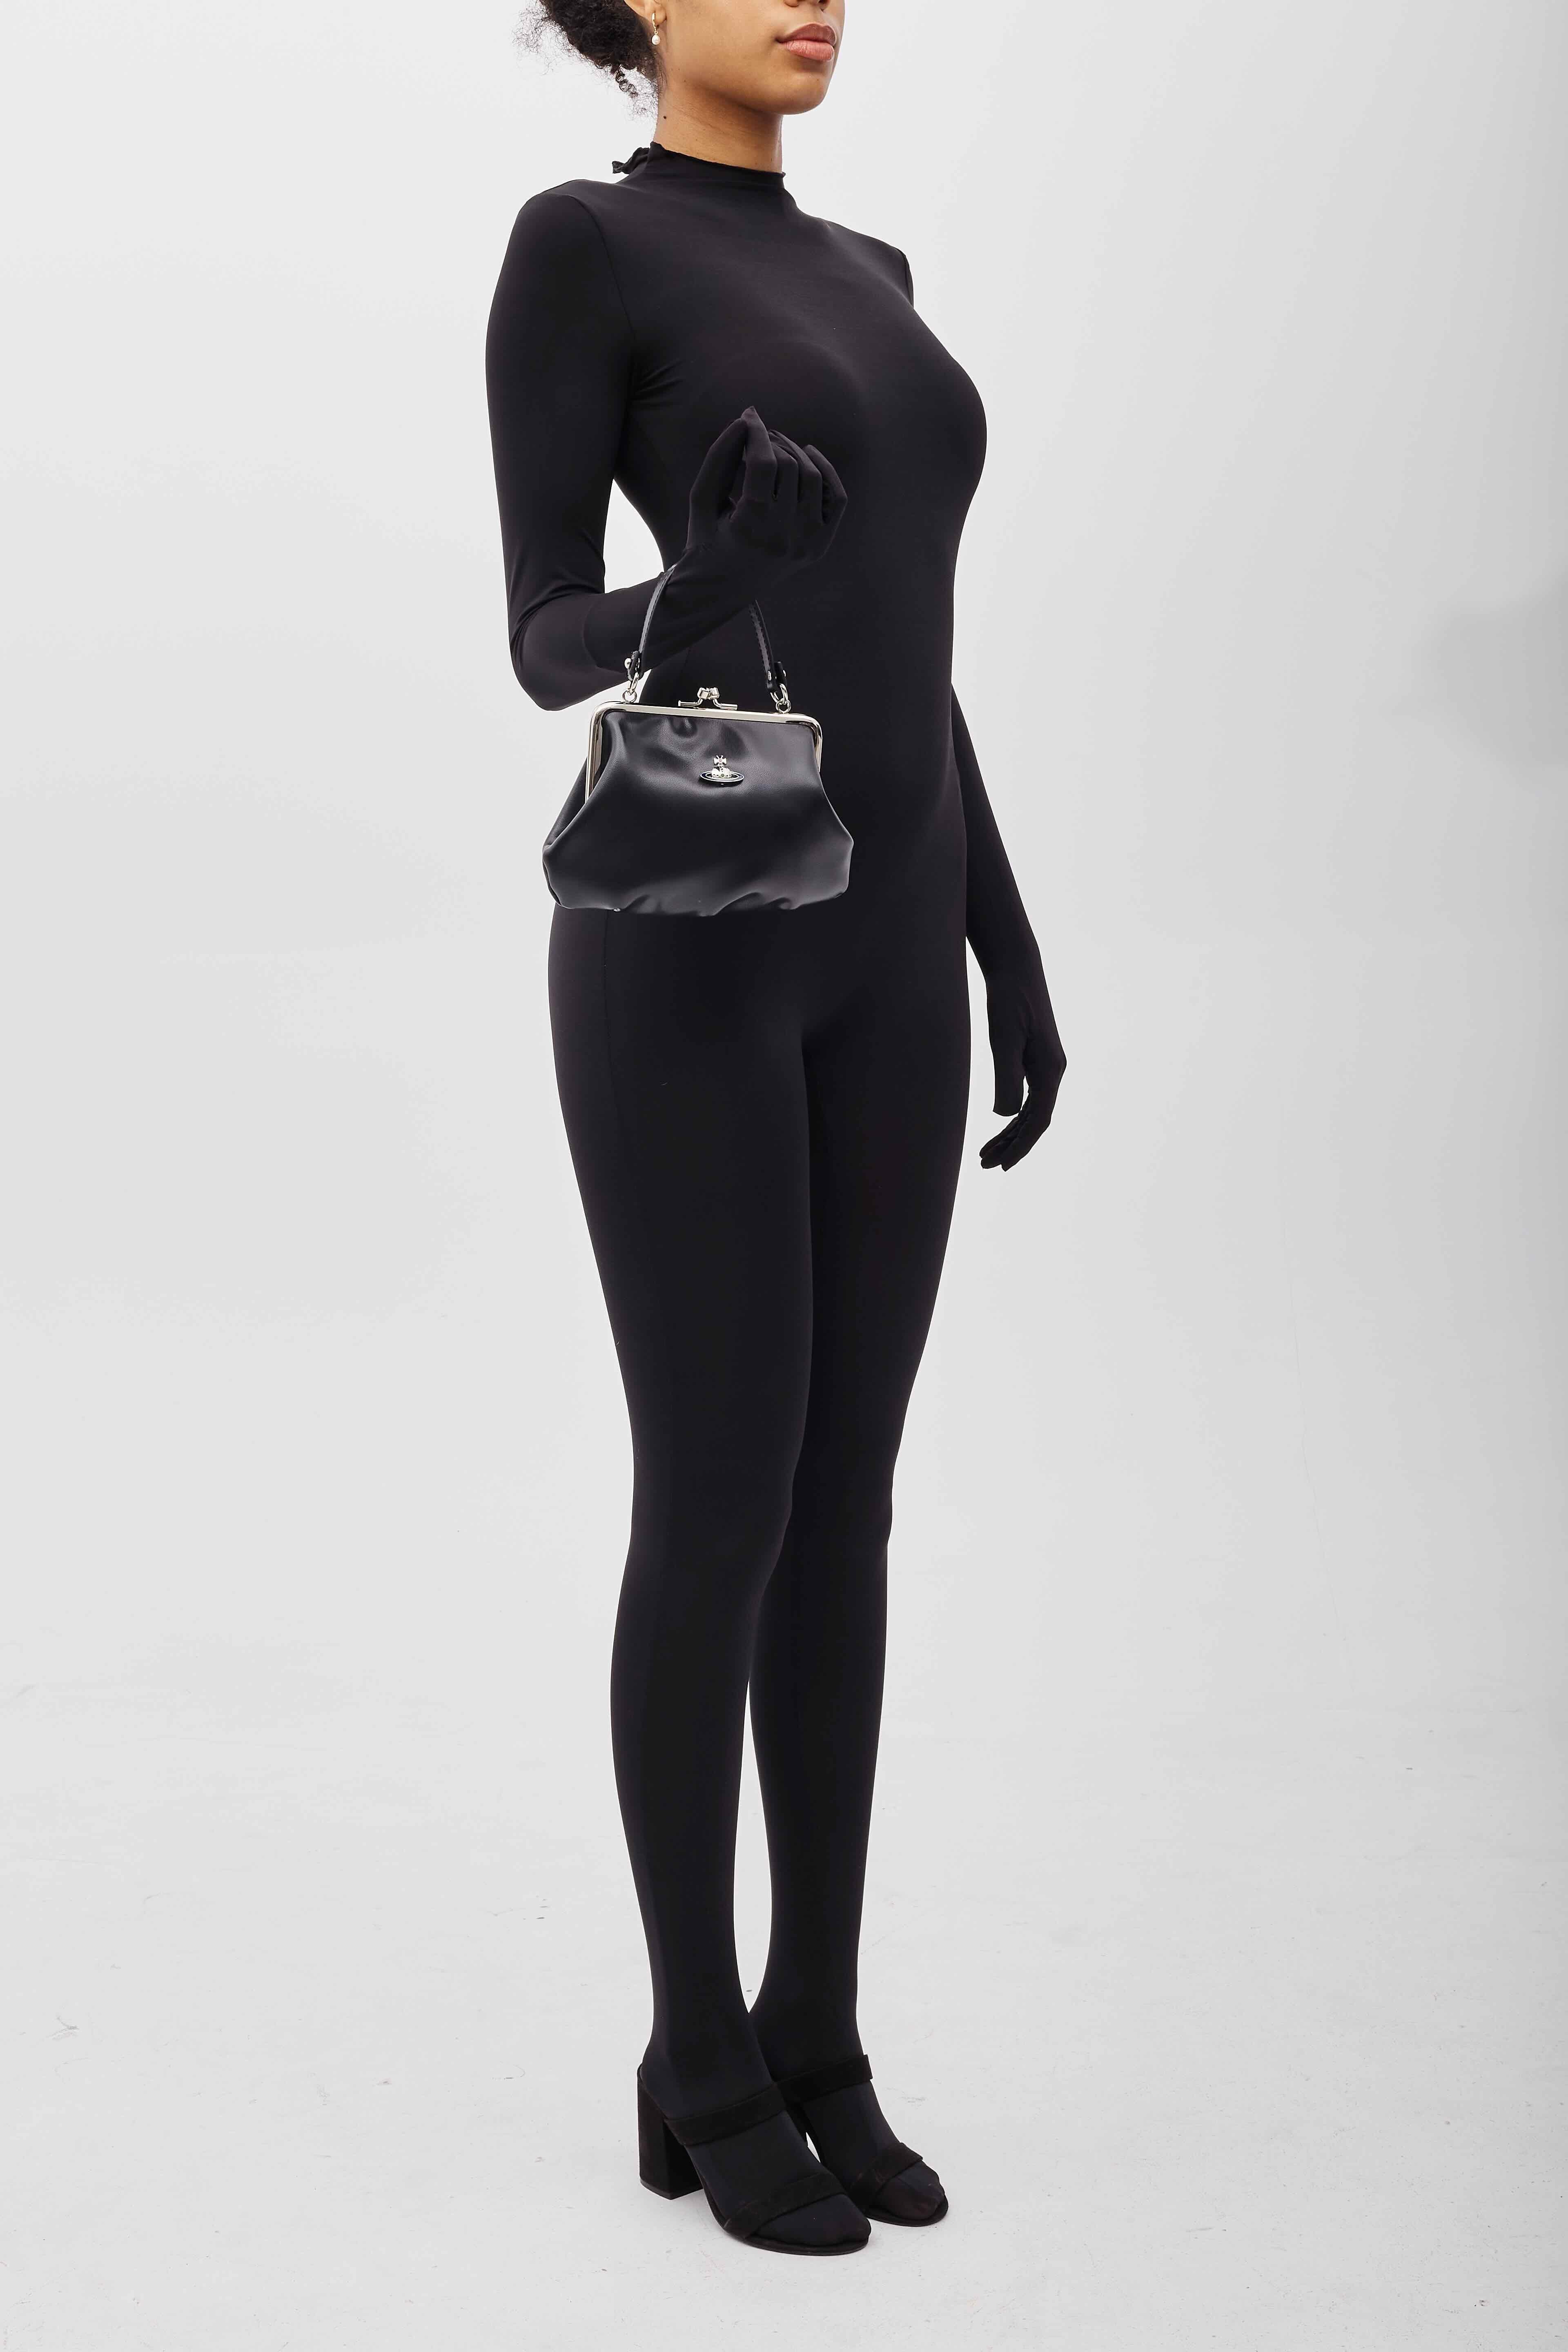 Vivienne Westwood Black Leather Granny Frame Bag For Sale 4